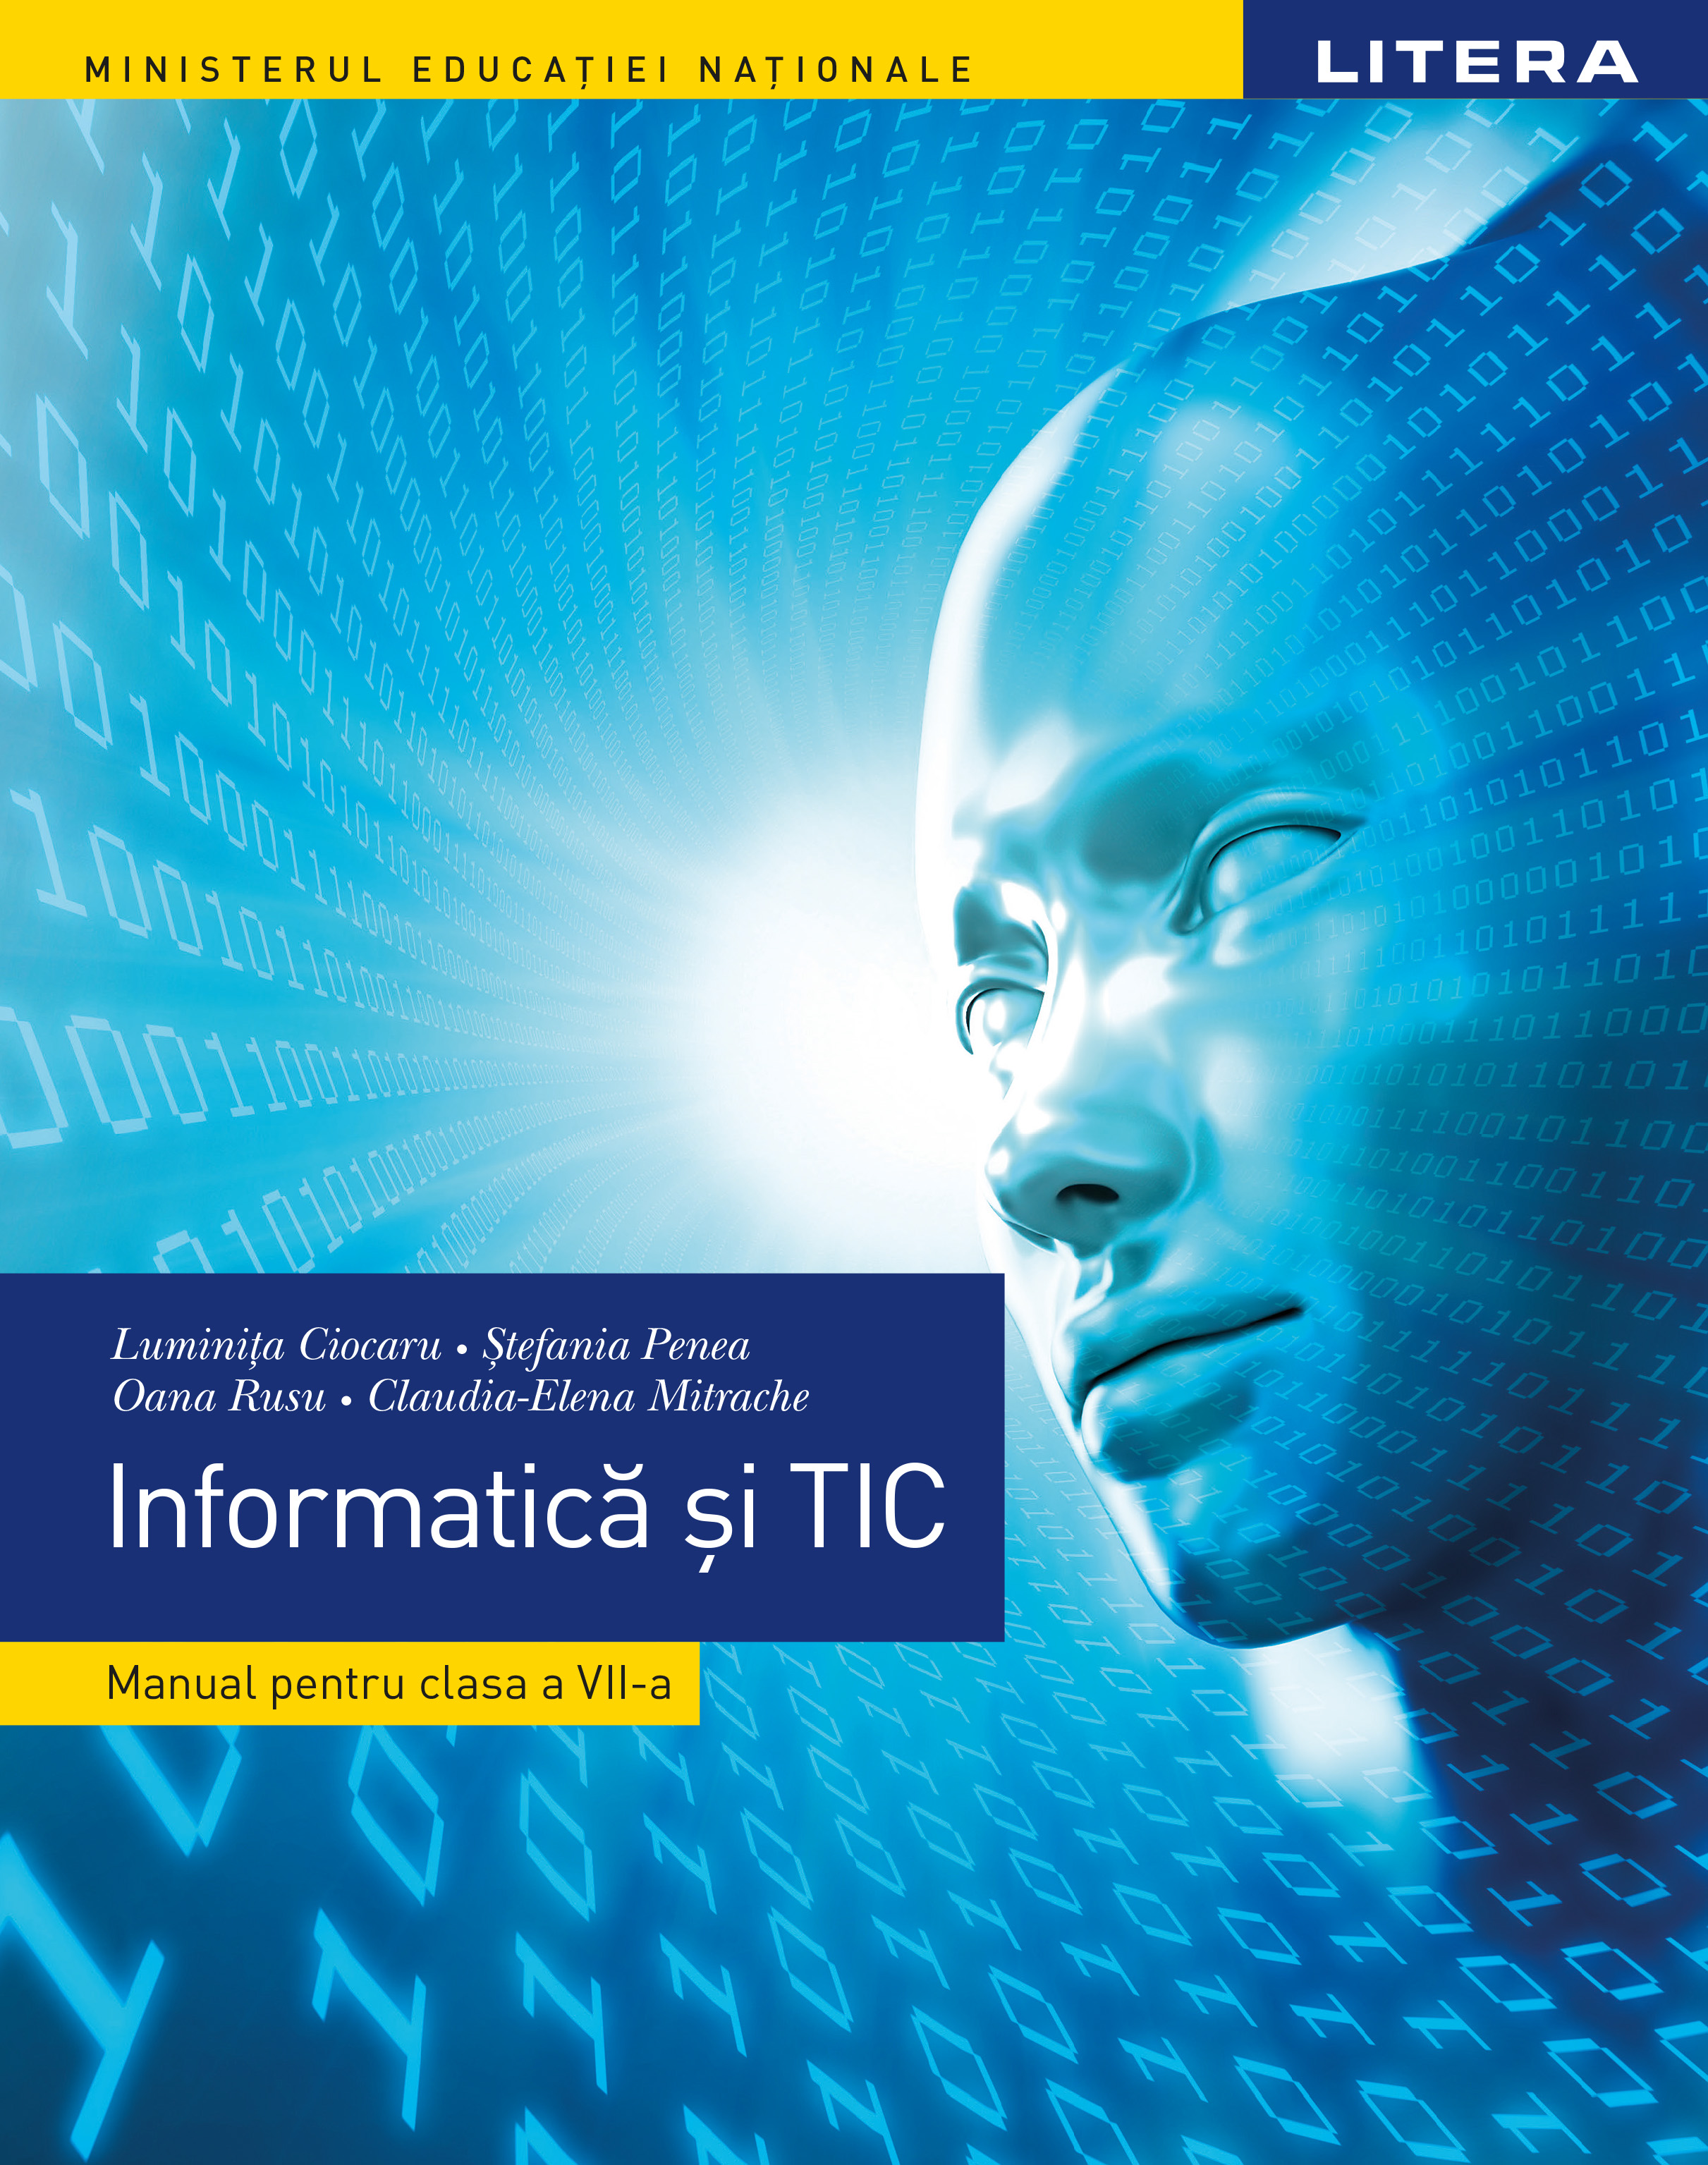 Informatica si TIC. Manual clasa a VII-a | Luminita Ciocaru, Stefania Penea, Oana Rusu, Claudia-Elena Mitrache